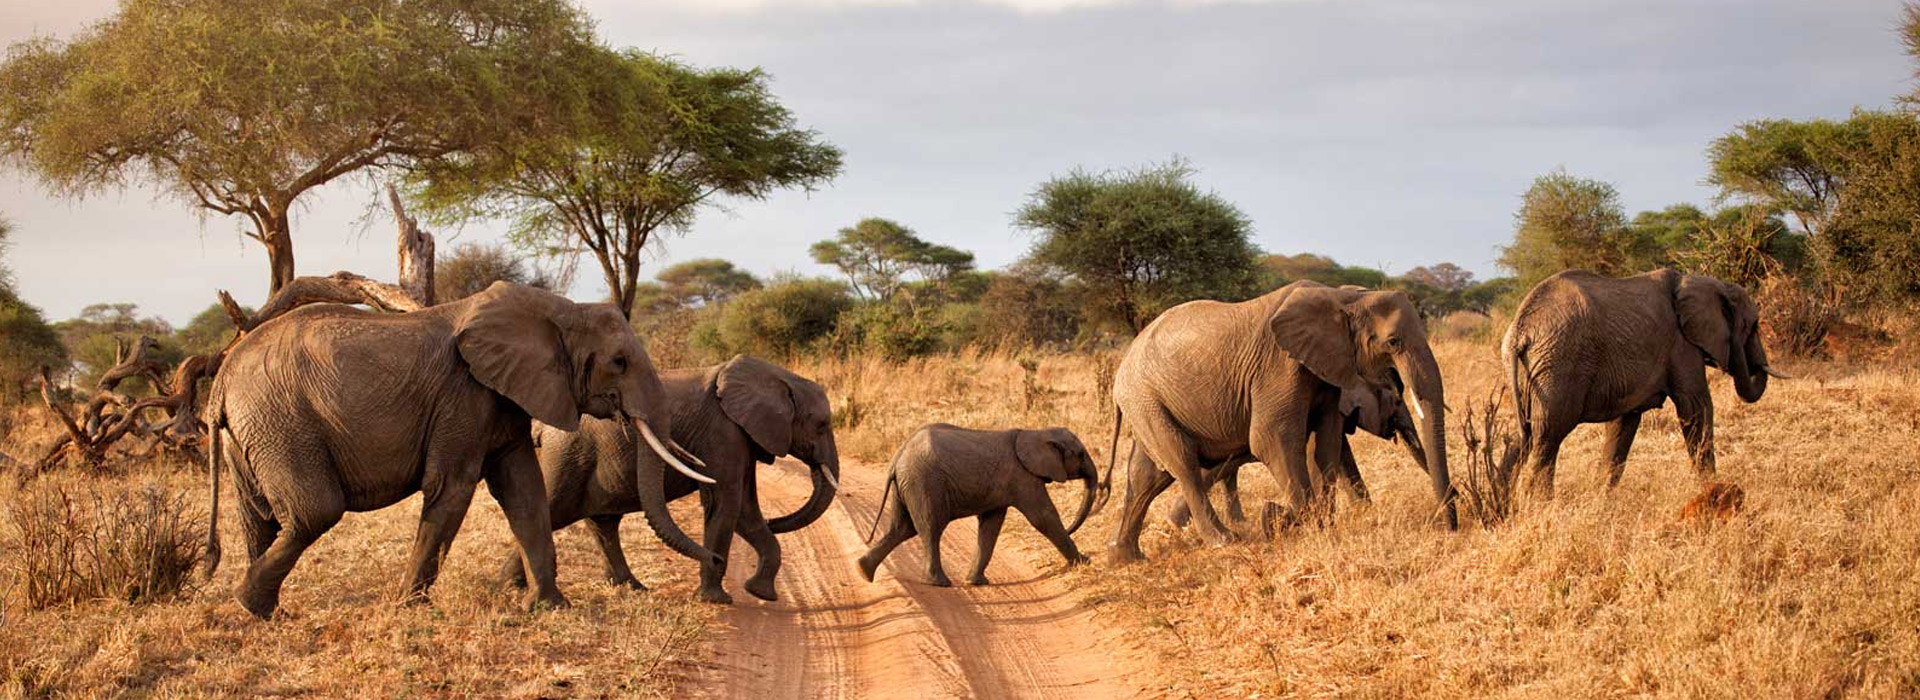 Kenya Tanzania Combined Safari